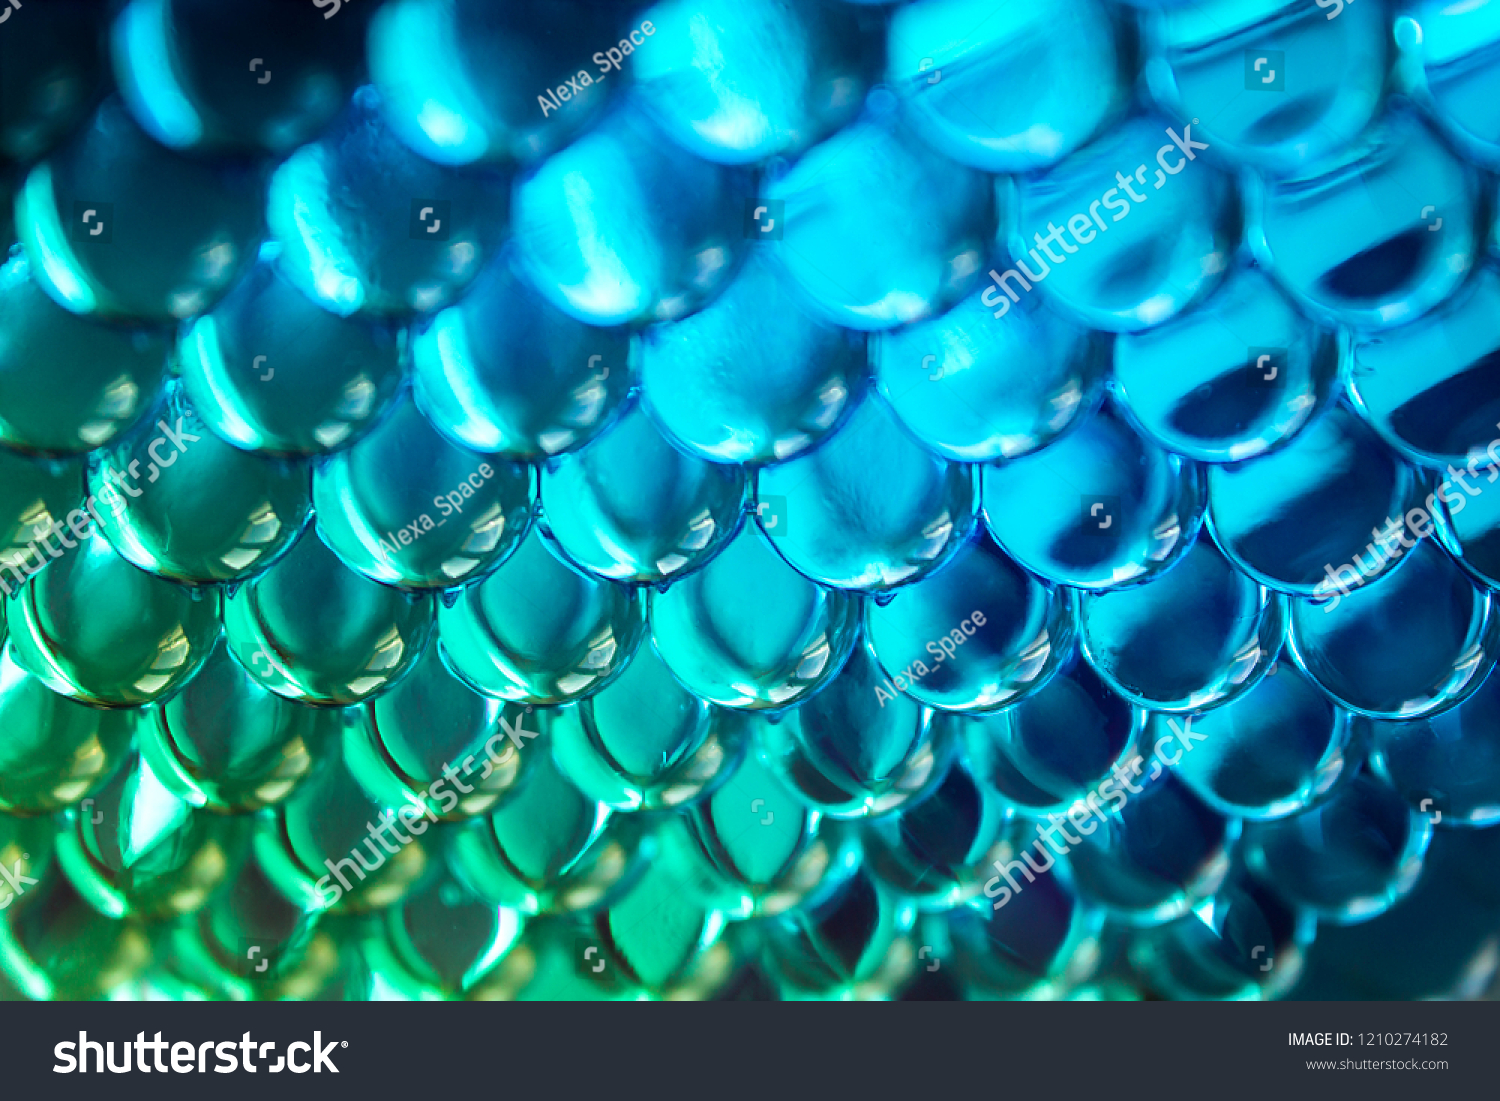 transparent turquoise